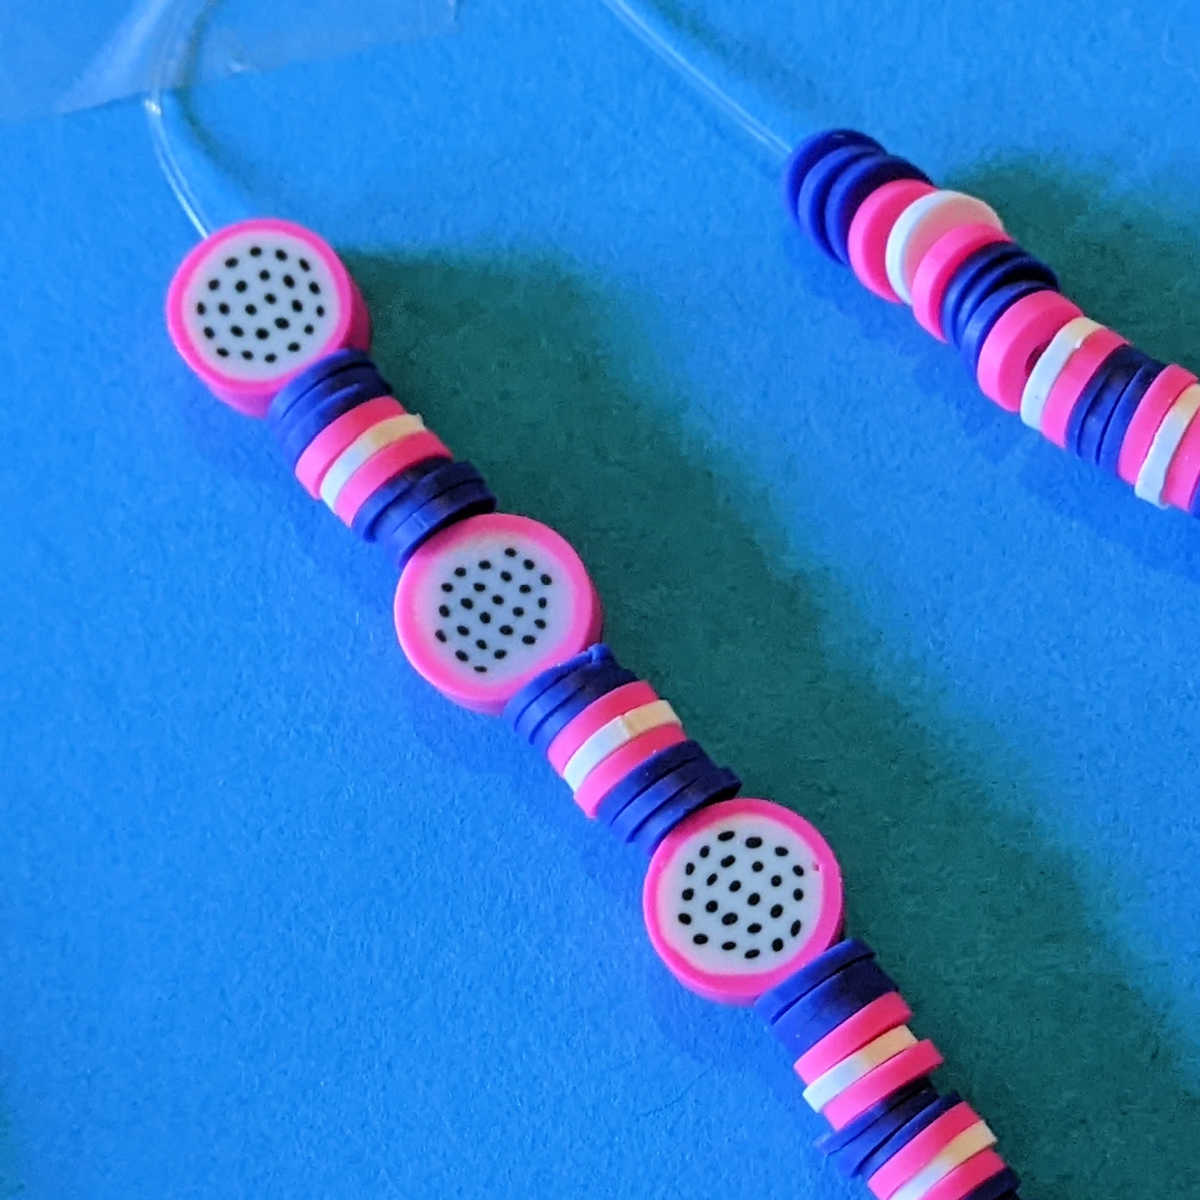 beads on elastic thread